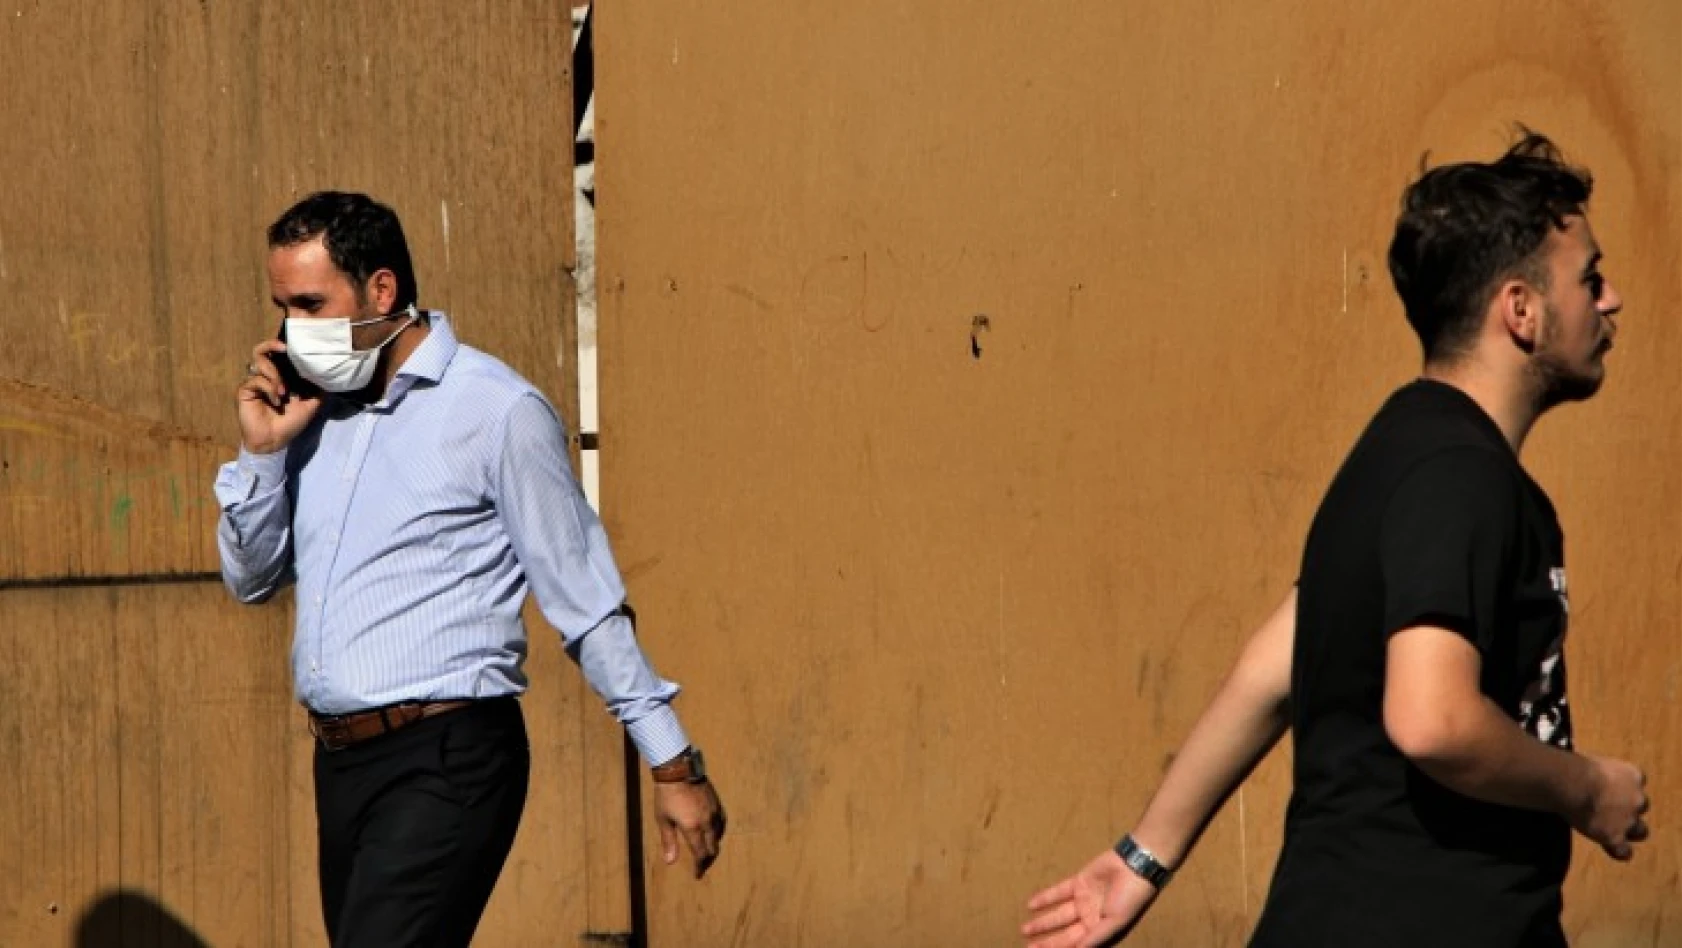 Elazığ'da vatandaşlar korona virüs tedbirlerini unuttu, maskeler çene altına indi